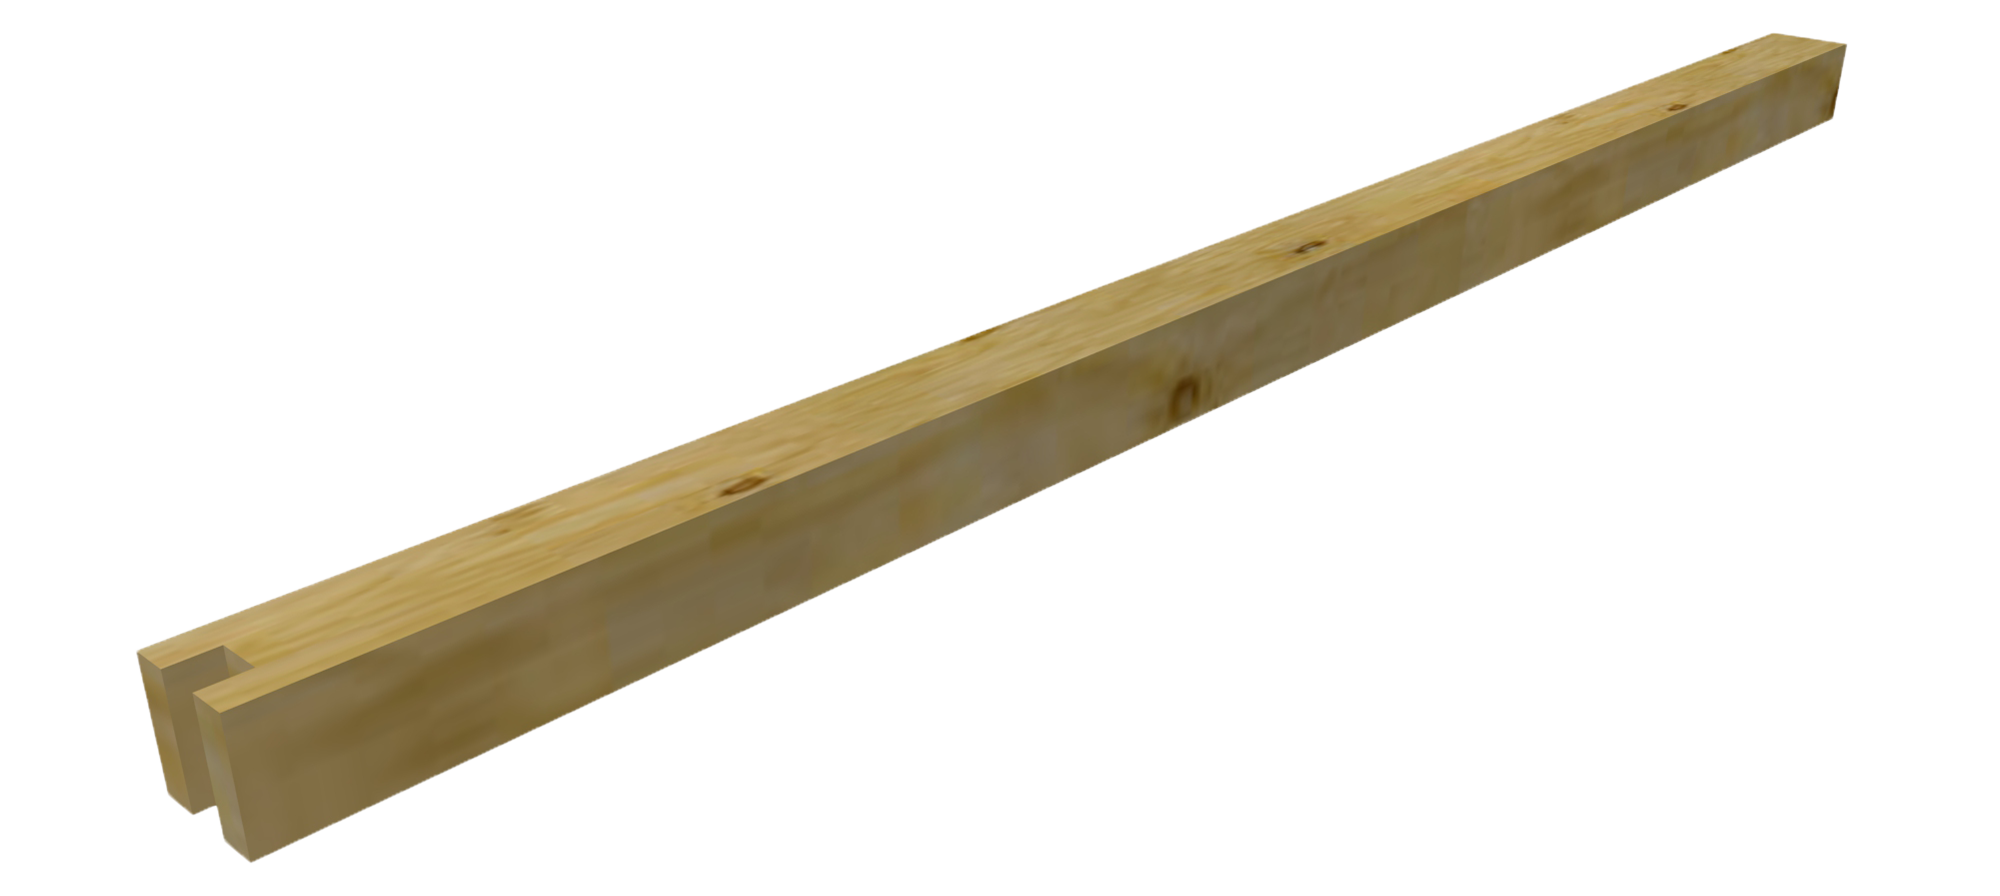 Bricomart postes madera 🥇 ¡VER PRECIOS · Comprar Online Enero 2024!